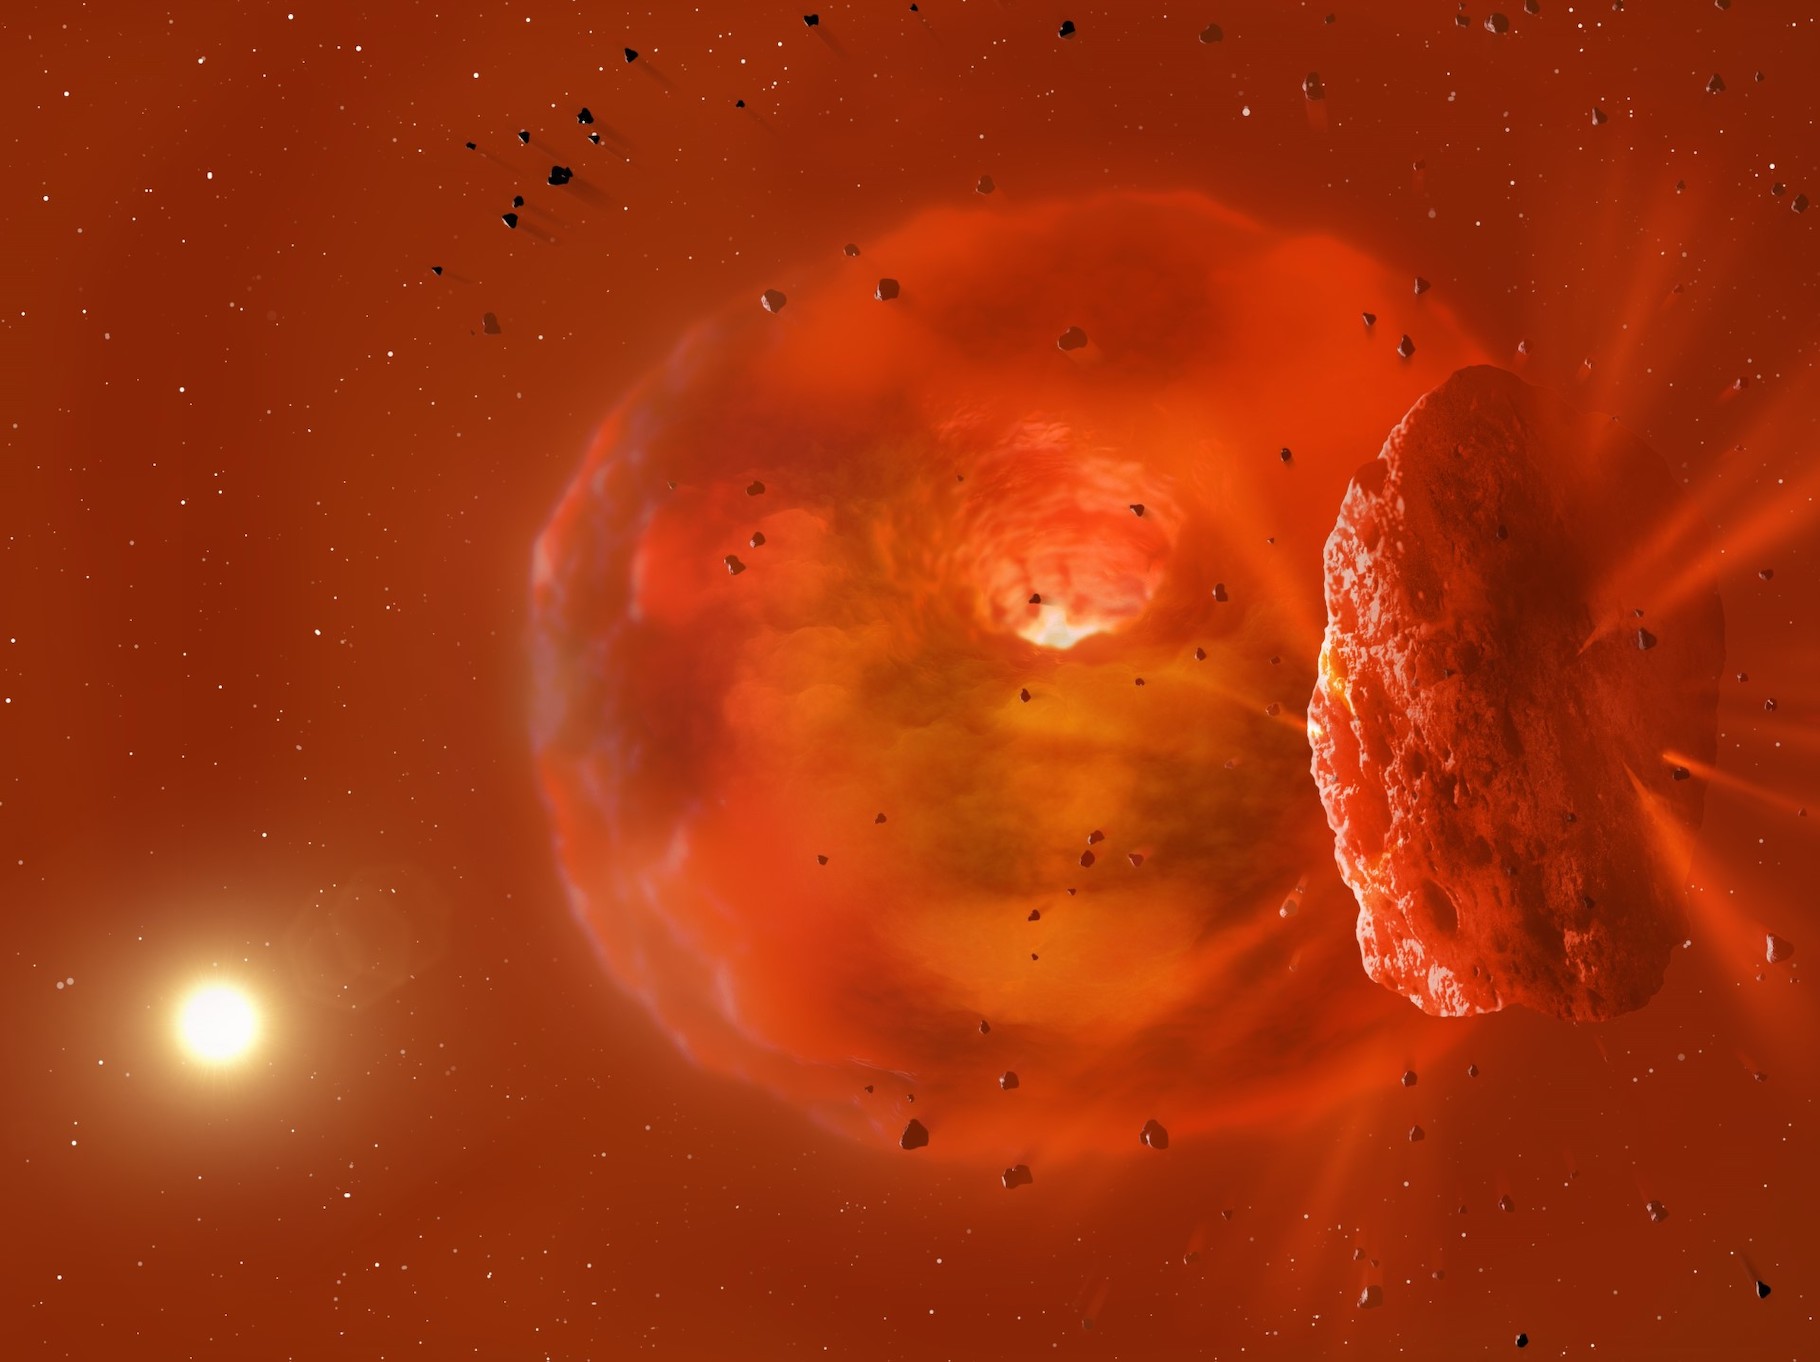 Deux exoplanètes géantes seraient entrées en collision. Ici, l’énorme corps brillant produit par l’événement. Au premier plan, des fragments de glace et de roche s’éloignent de la collision et se croiseront plus tard entre la Terre et l’étoile hôte visible à l’arrière-plan de l’image. © Mark Garlick, Université de Bristol